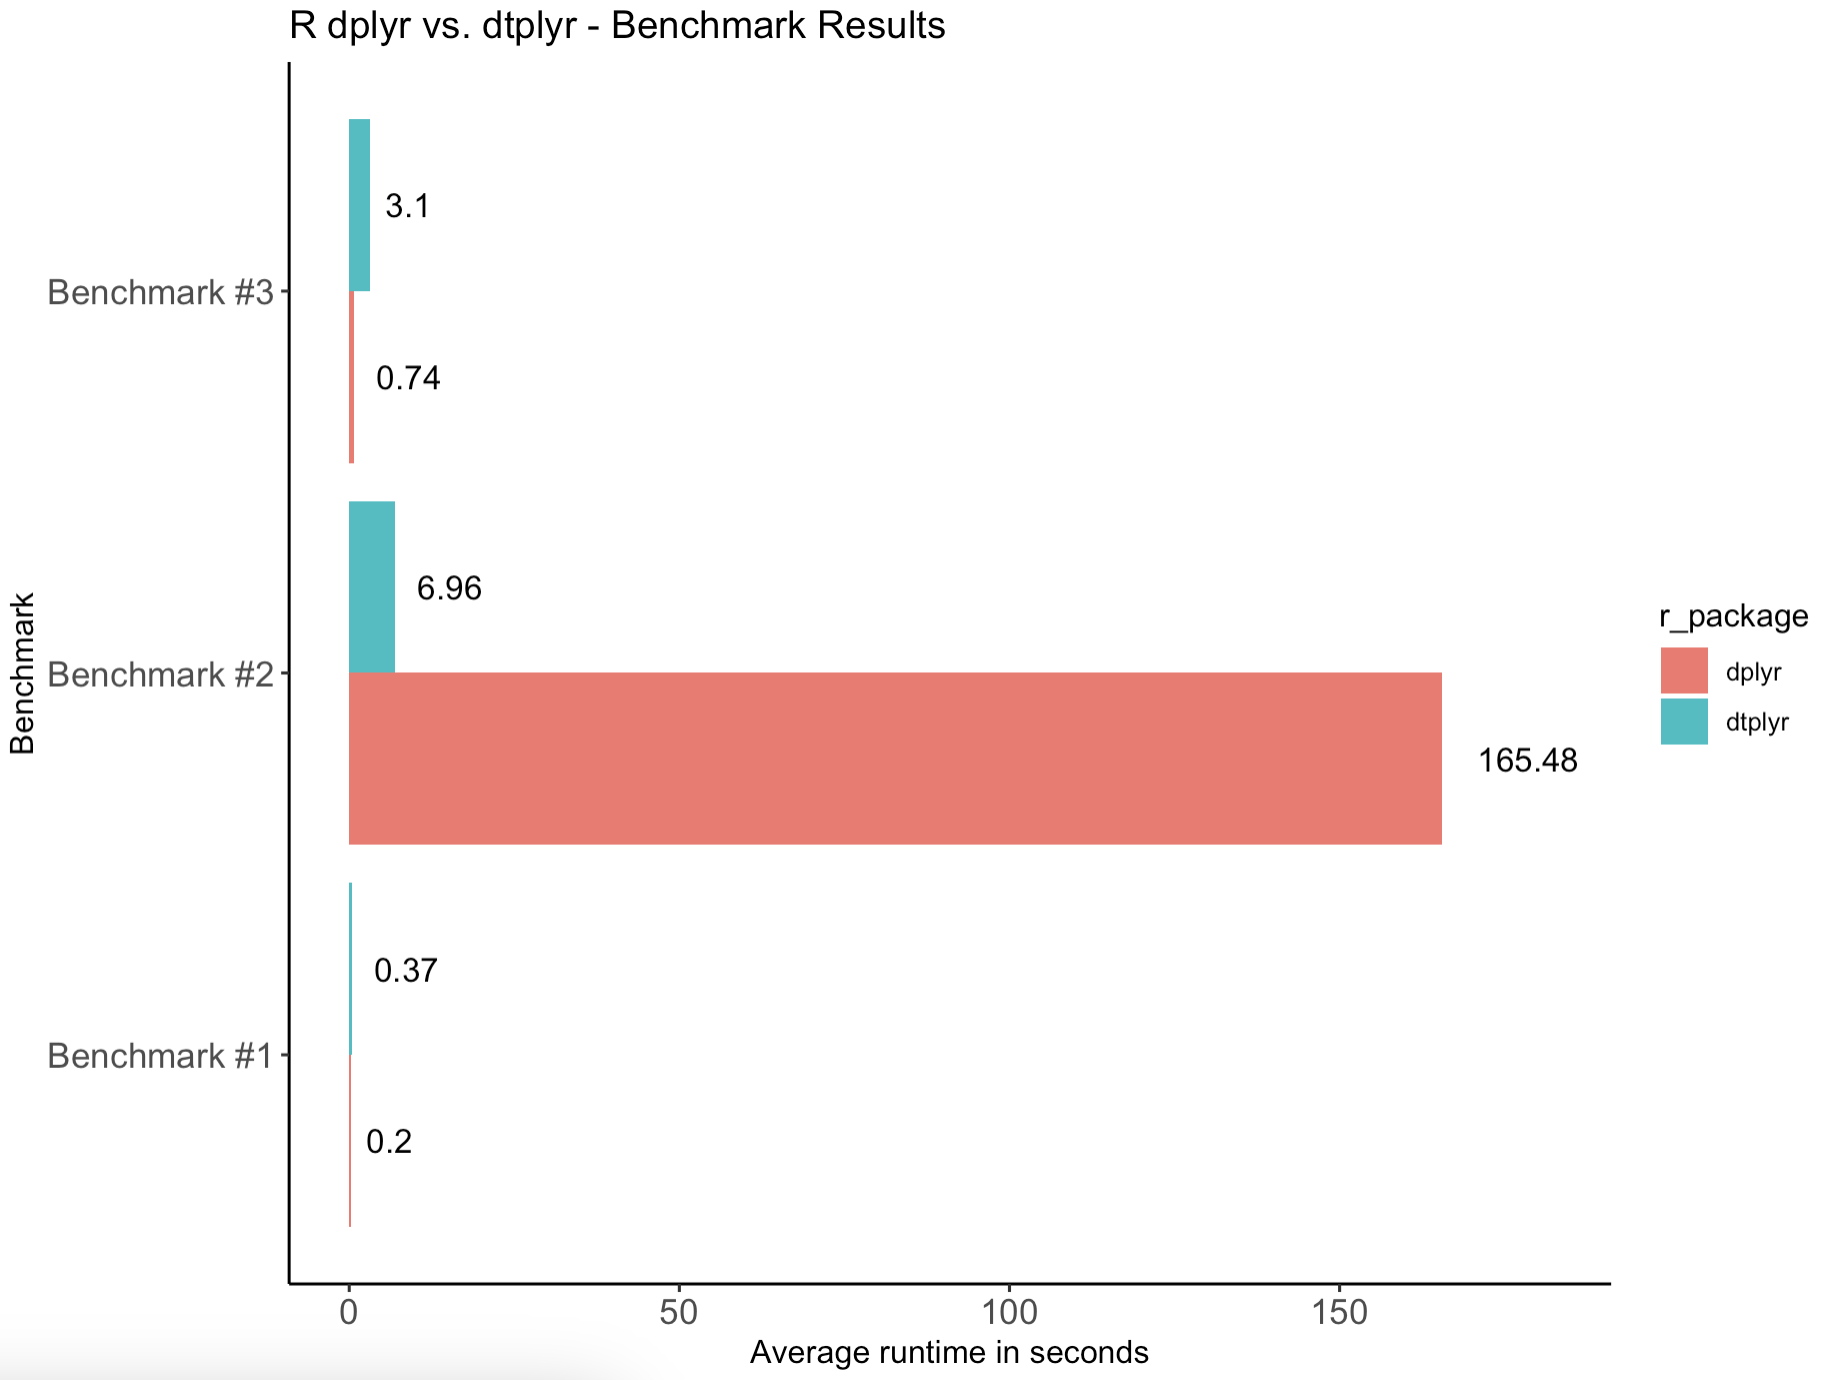 Image 7 - R dtplyr vs dplyr benchmark results